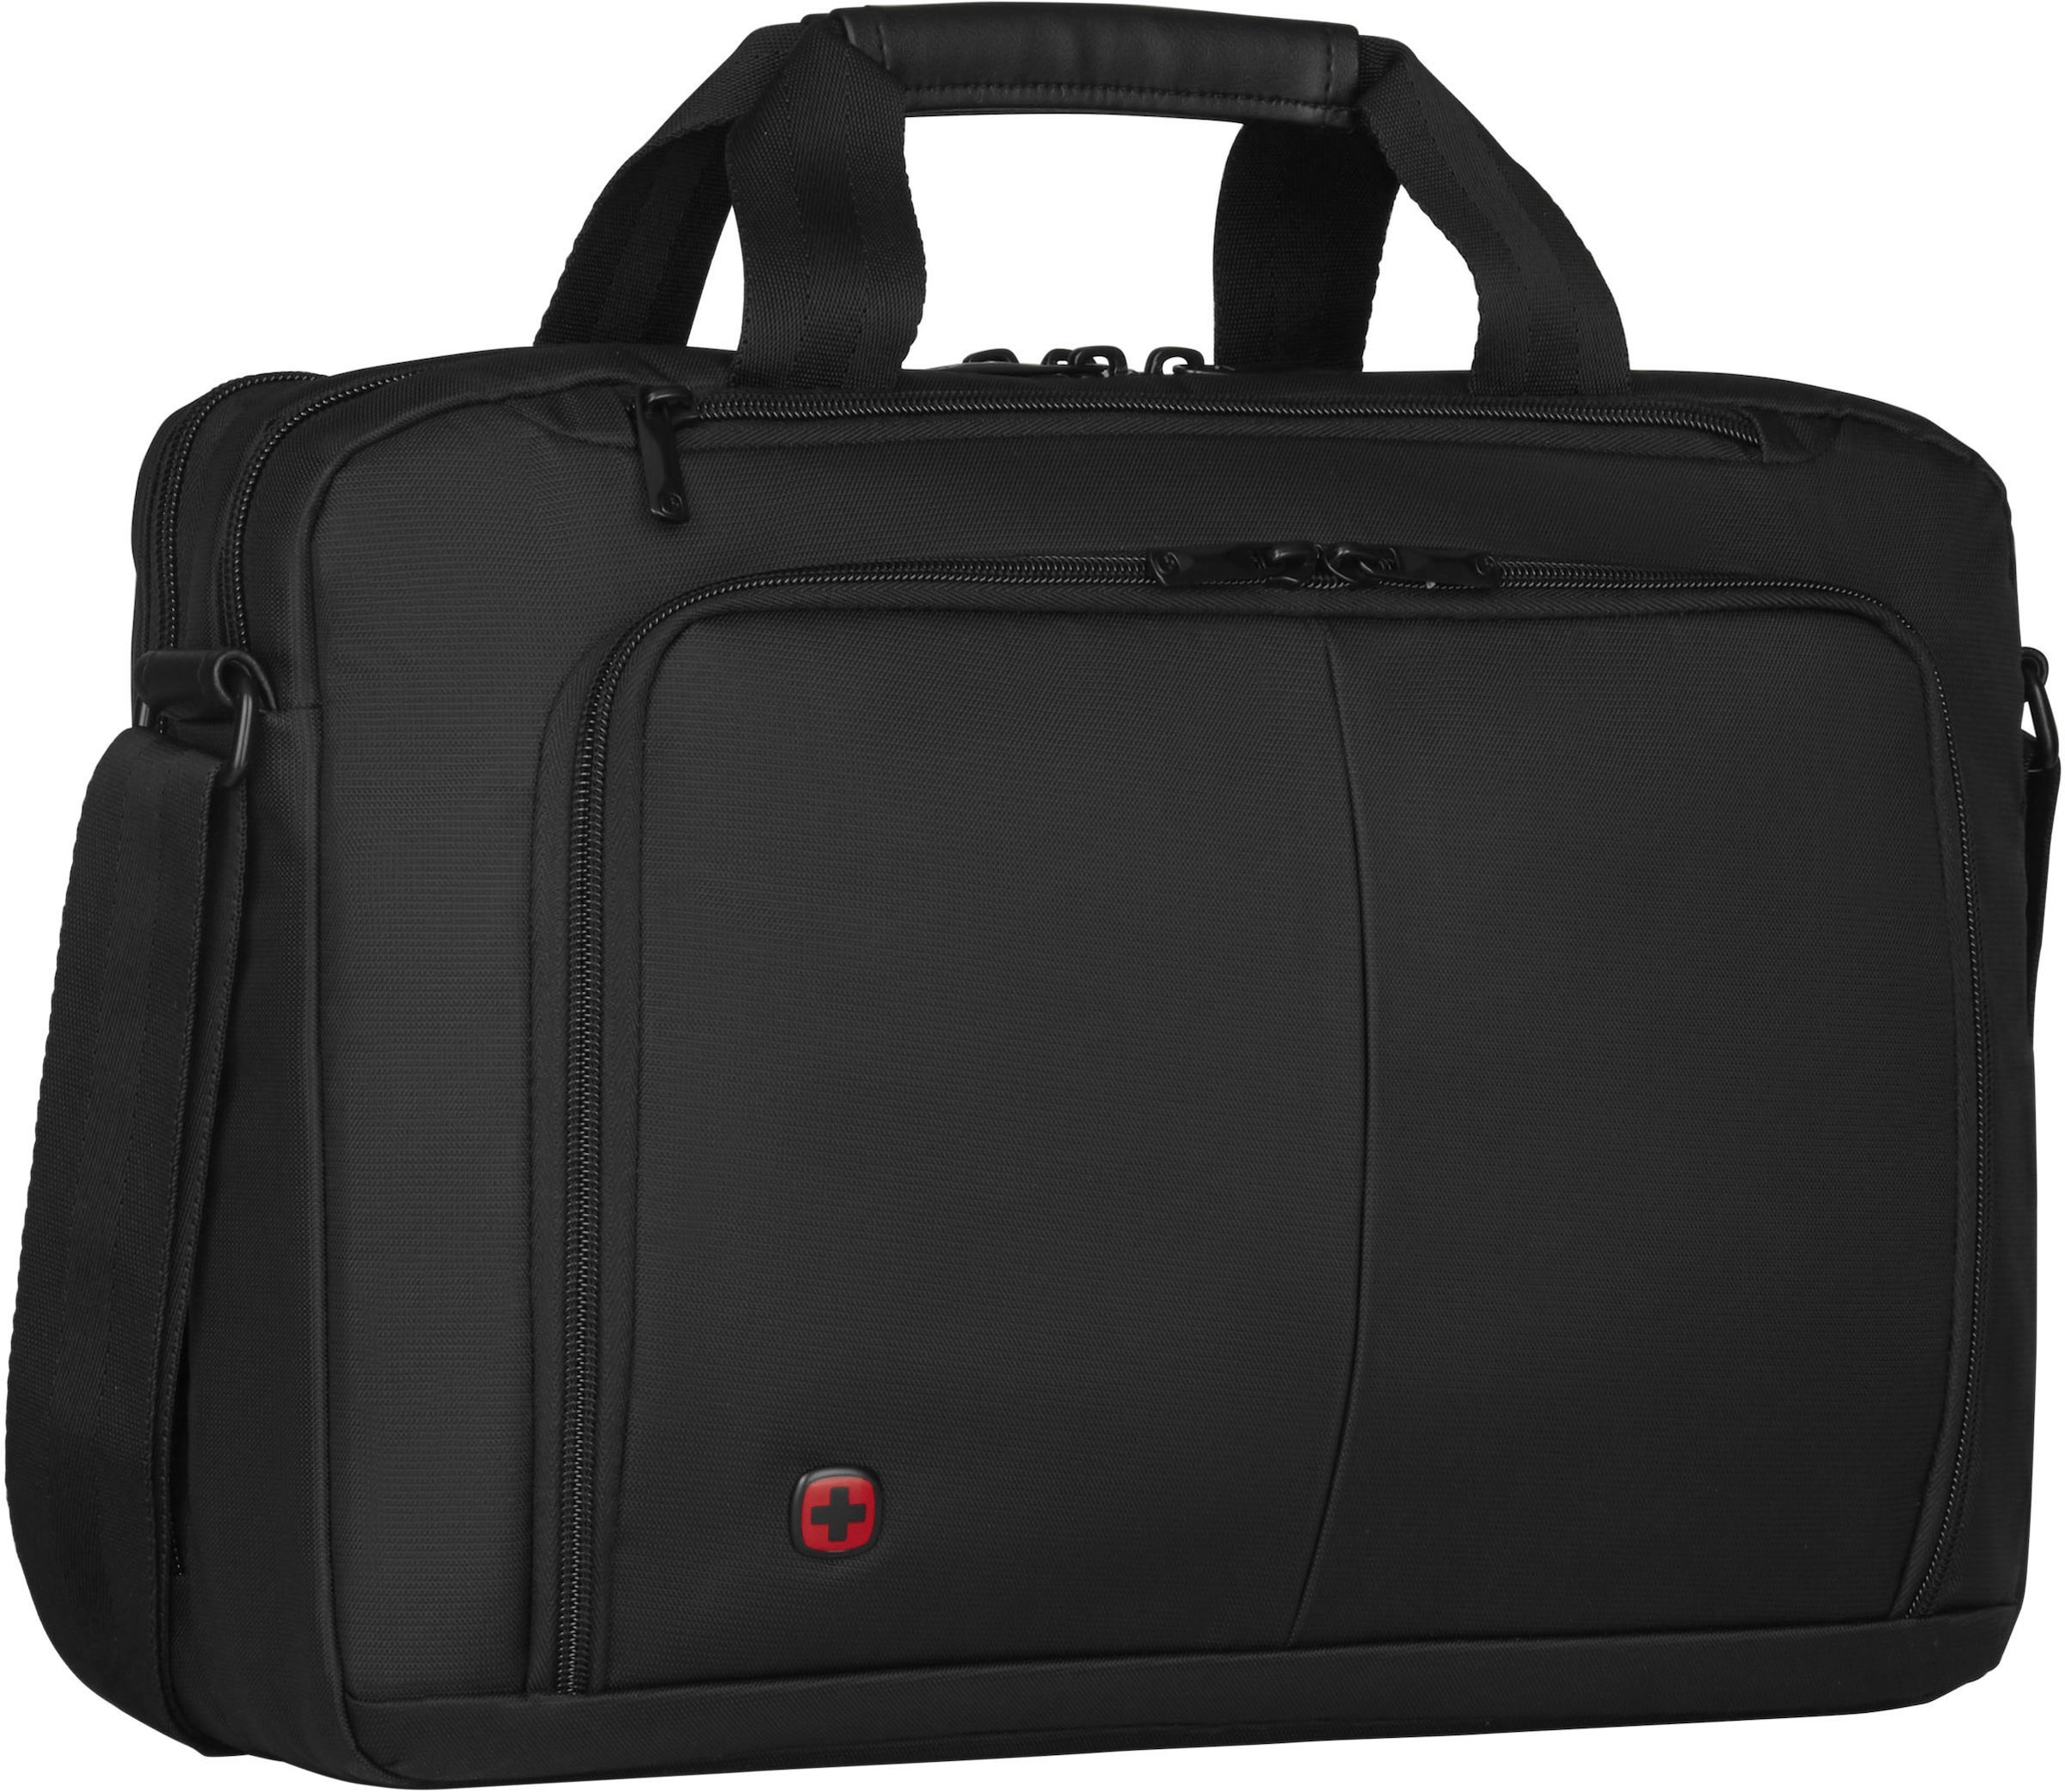 Wenger Laptoptasche »Source, schwarz«, mit 16-Zoll Laptopfach und zusätzlichem 10-Zoll Tabletfach